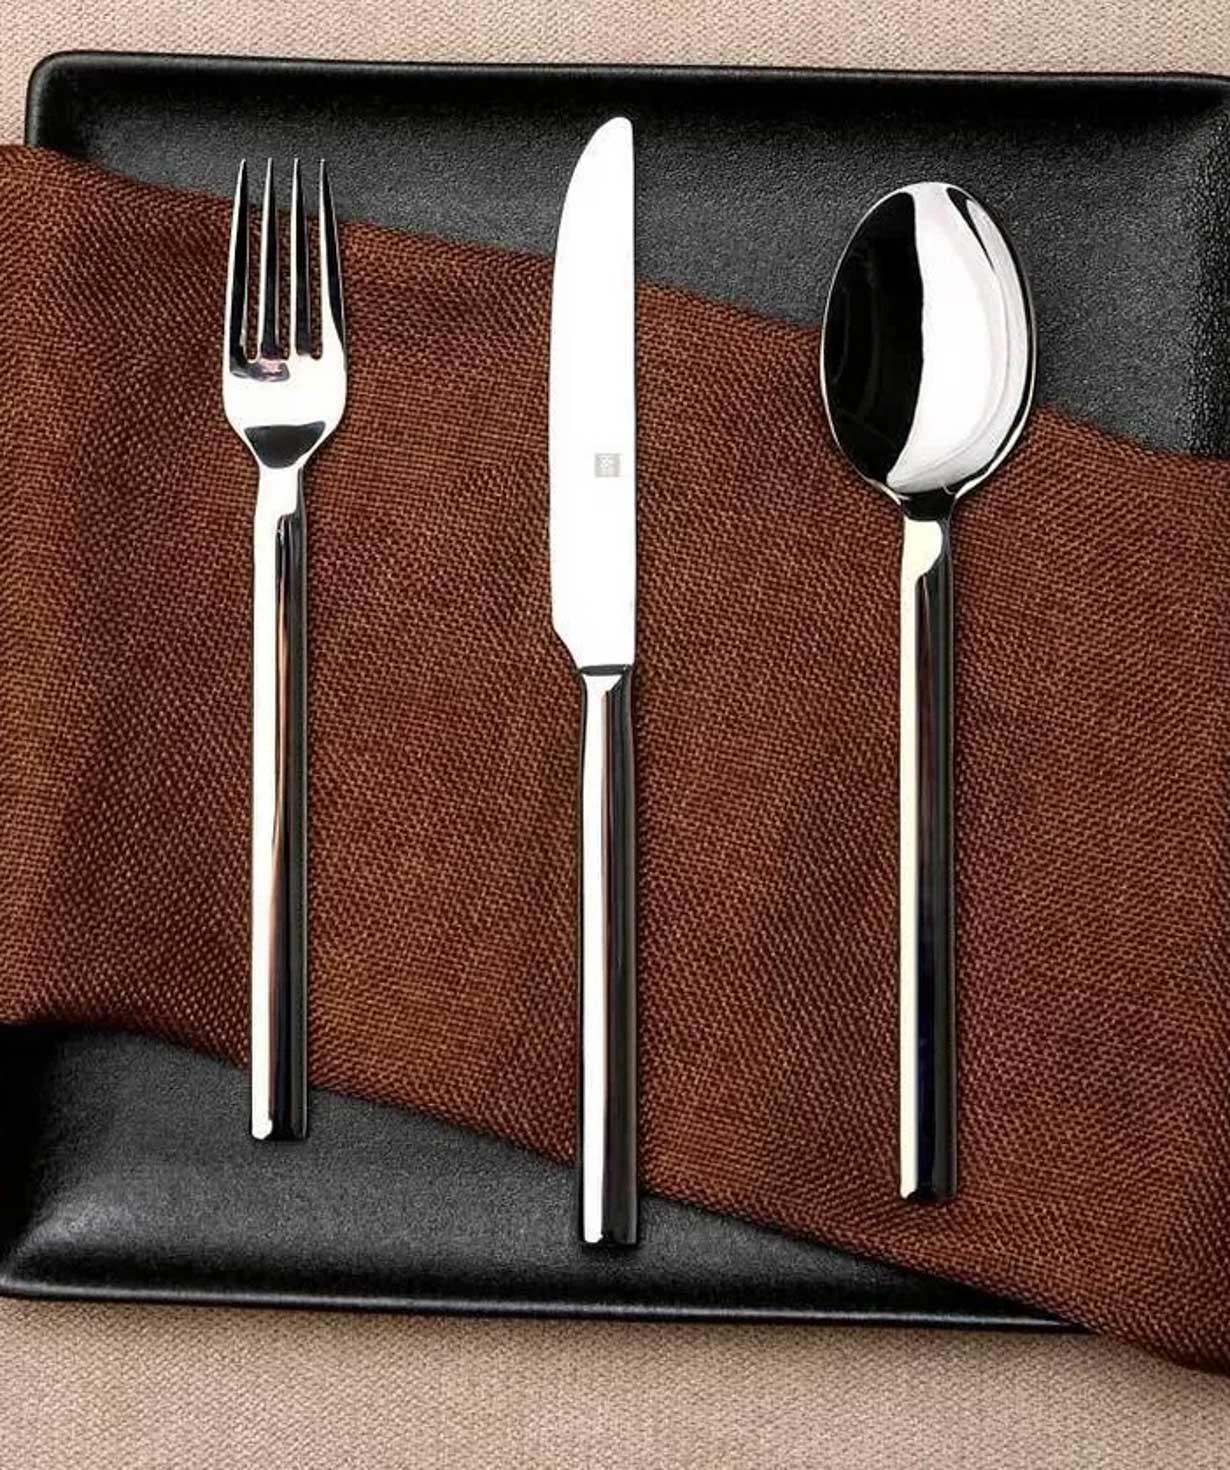 Tableware set ''Mijia Huohou'' stainless steel